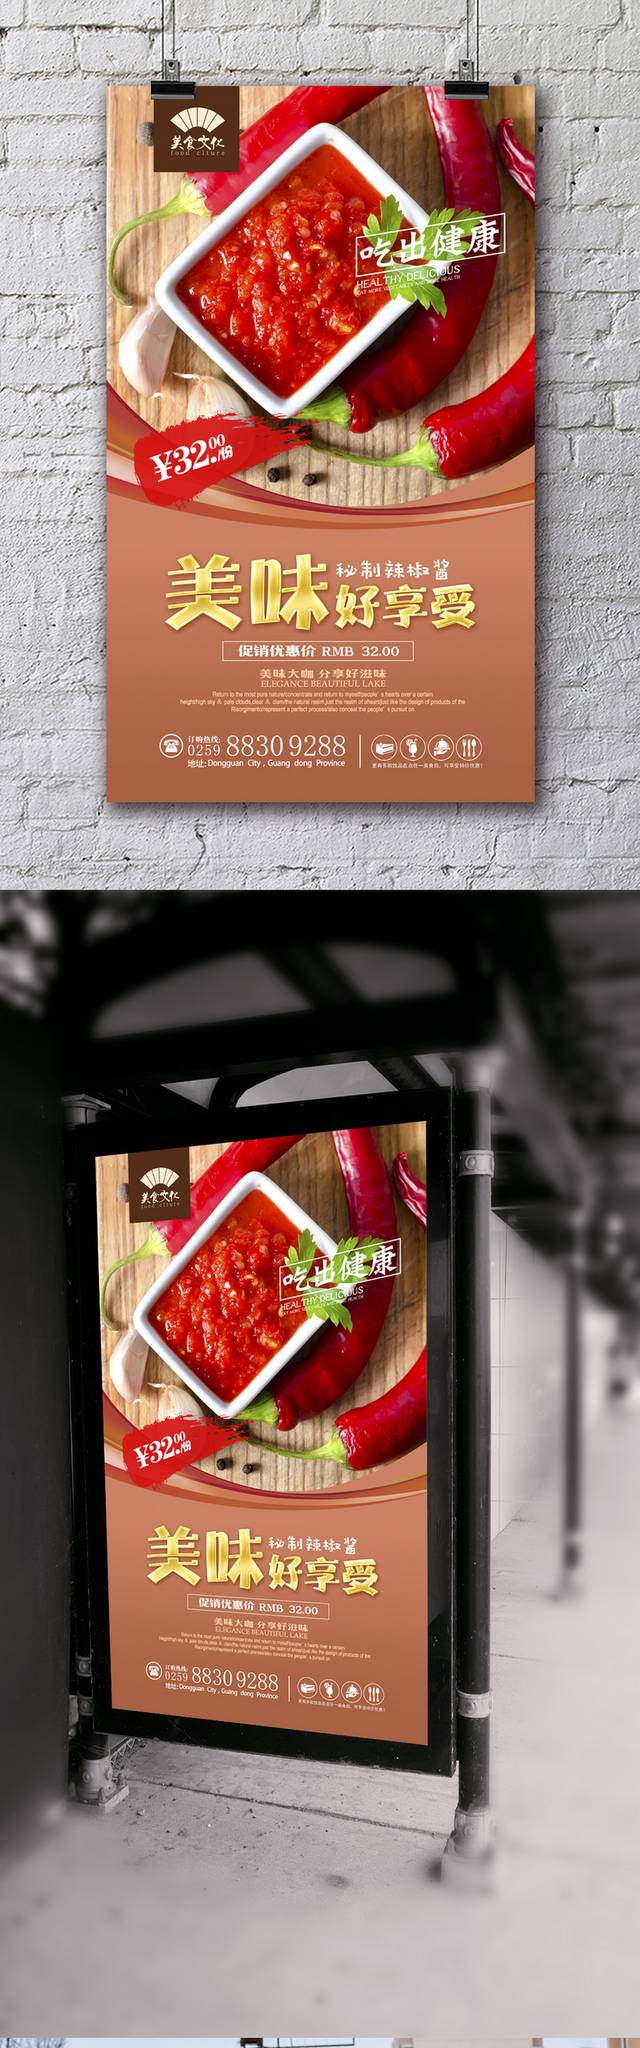 调味品辣椒酱餐饮宣传海报设计